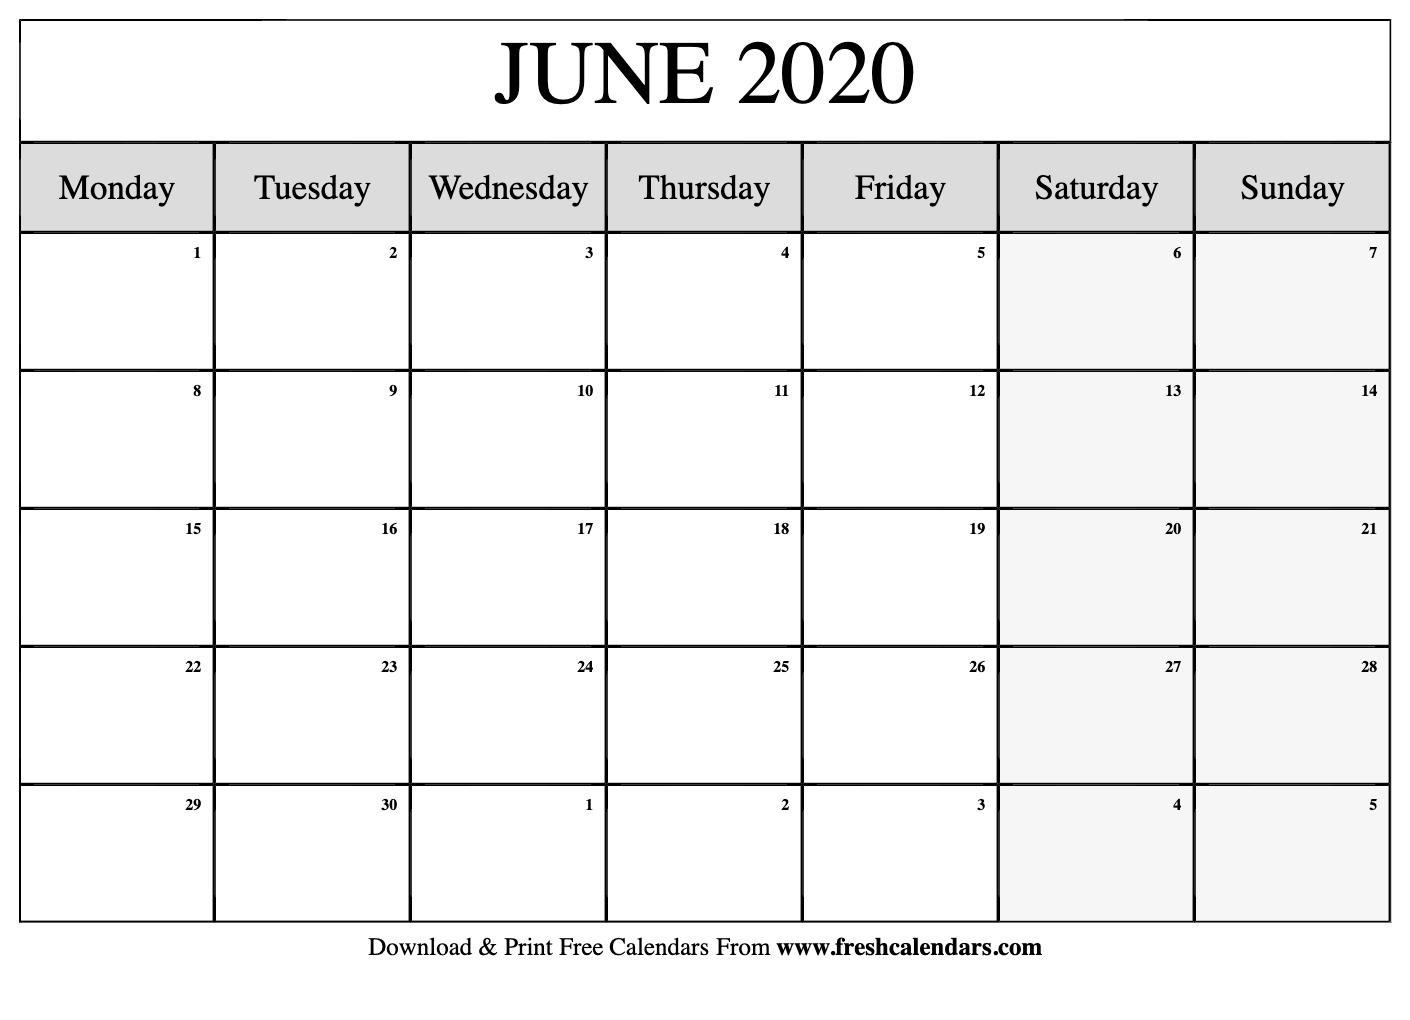 Free Printable June 2020 Calendars